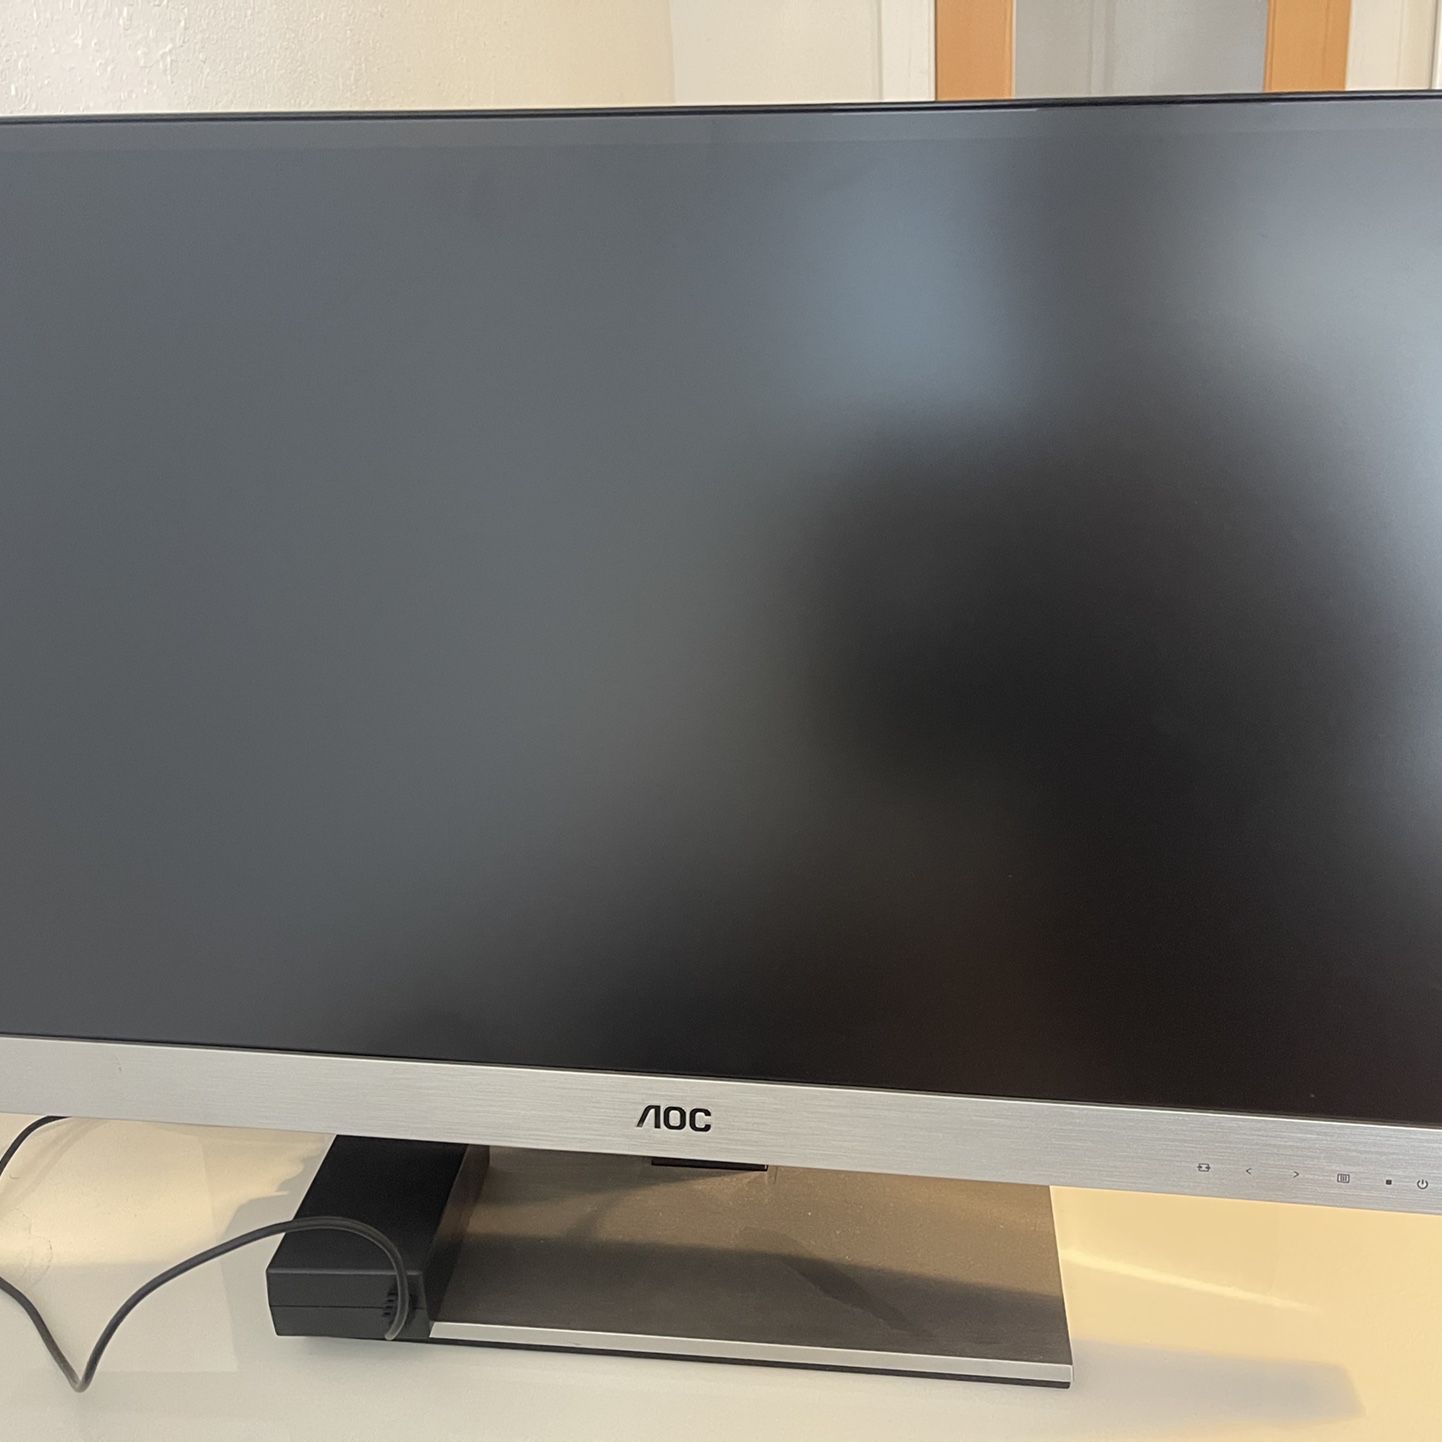 AOC 27” LED/LCD monitor